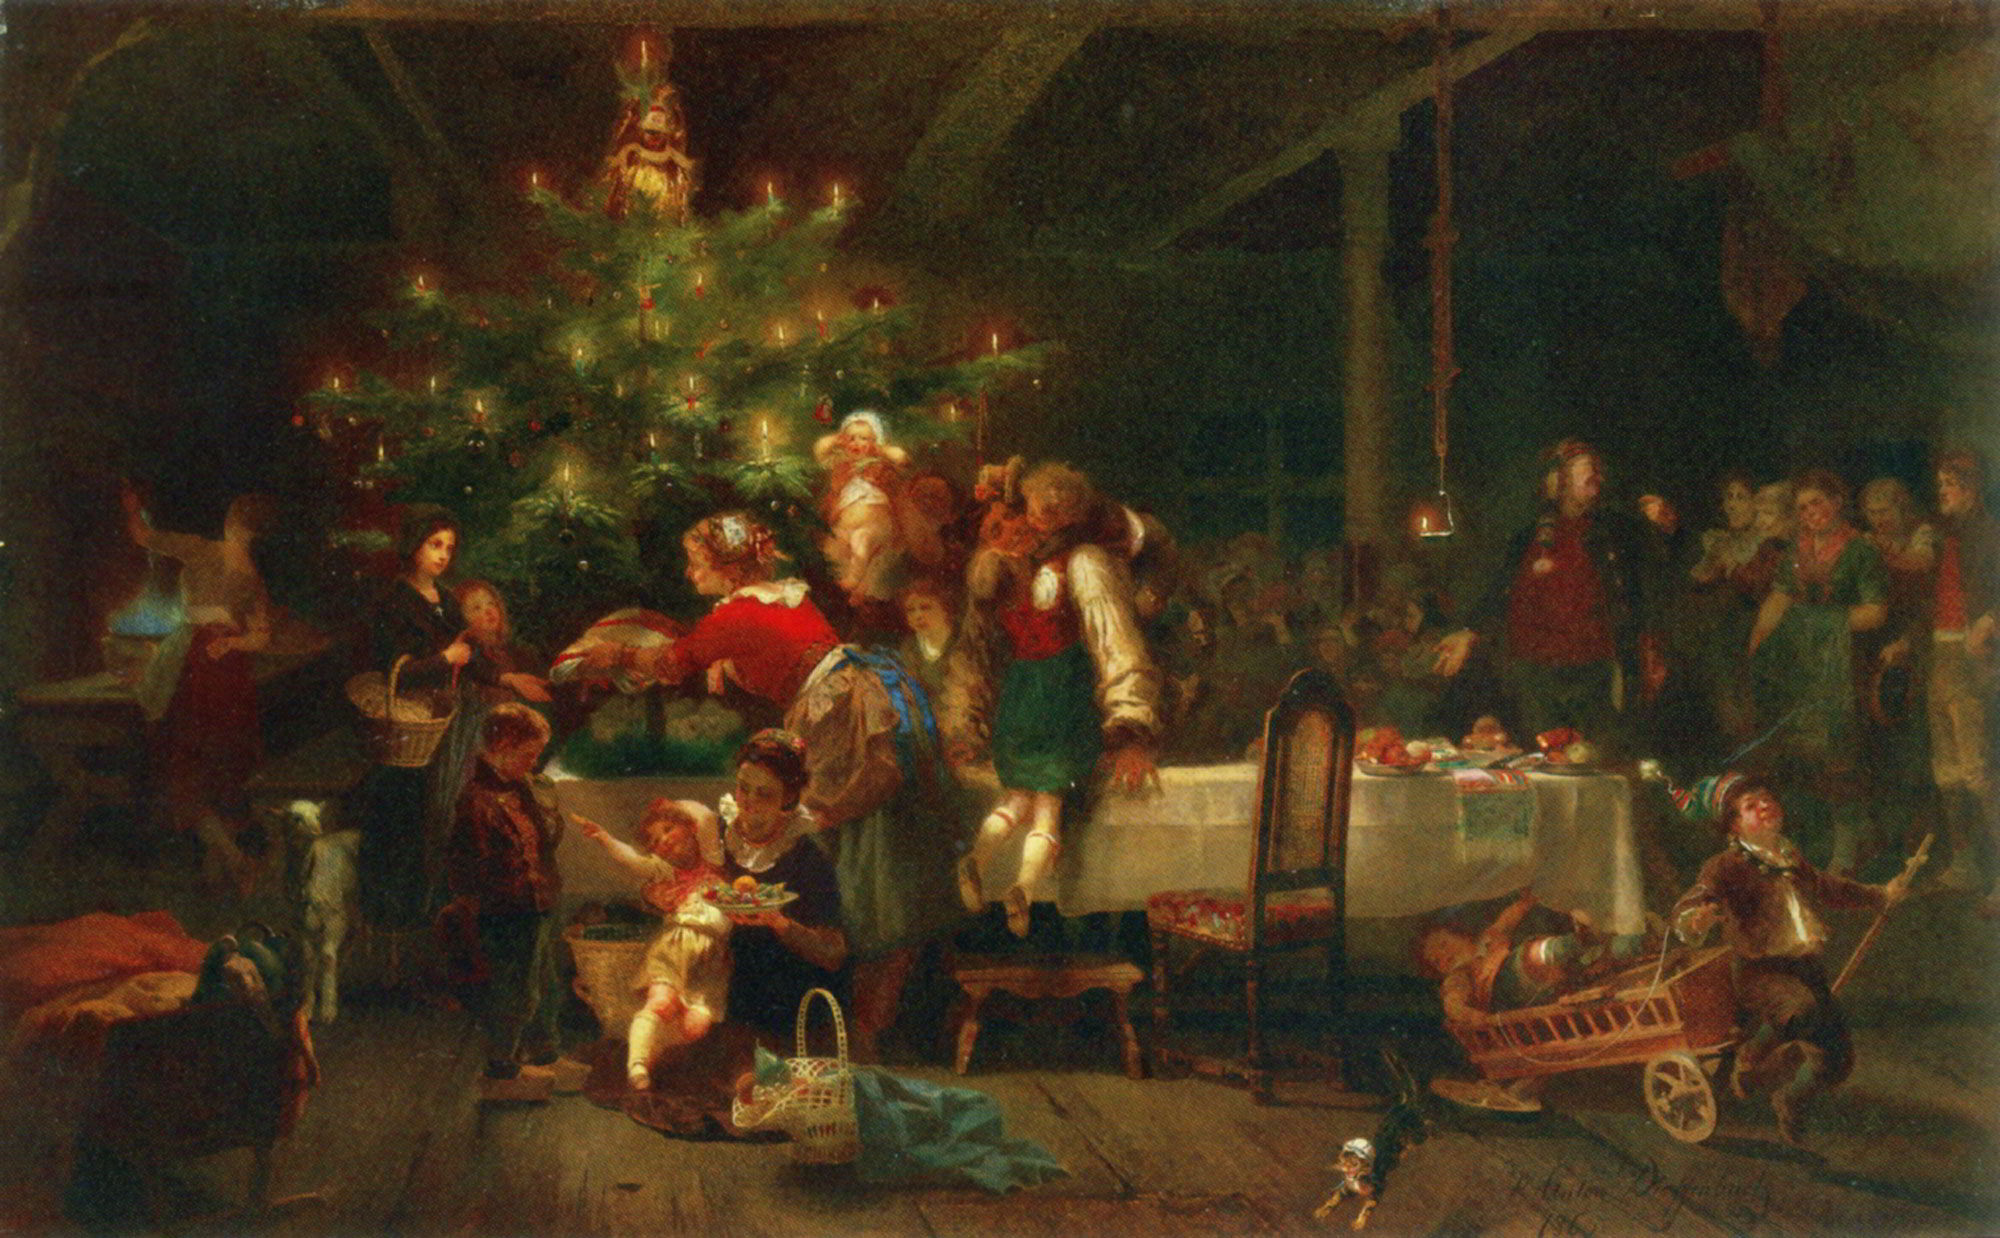 Tranh sơn dầu chủ đề Giáng Sinh A Christmas Party - 1865 - Anton Heinrich Dieffenbach 